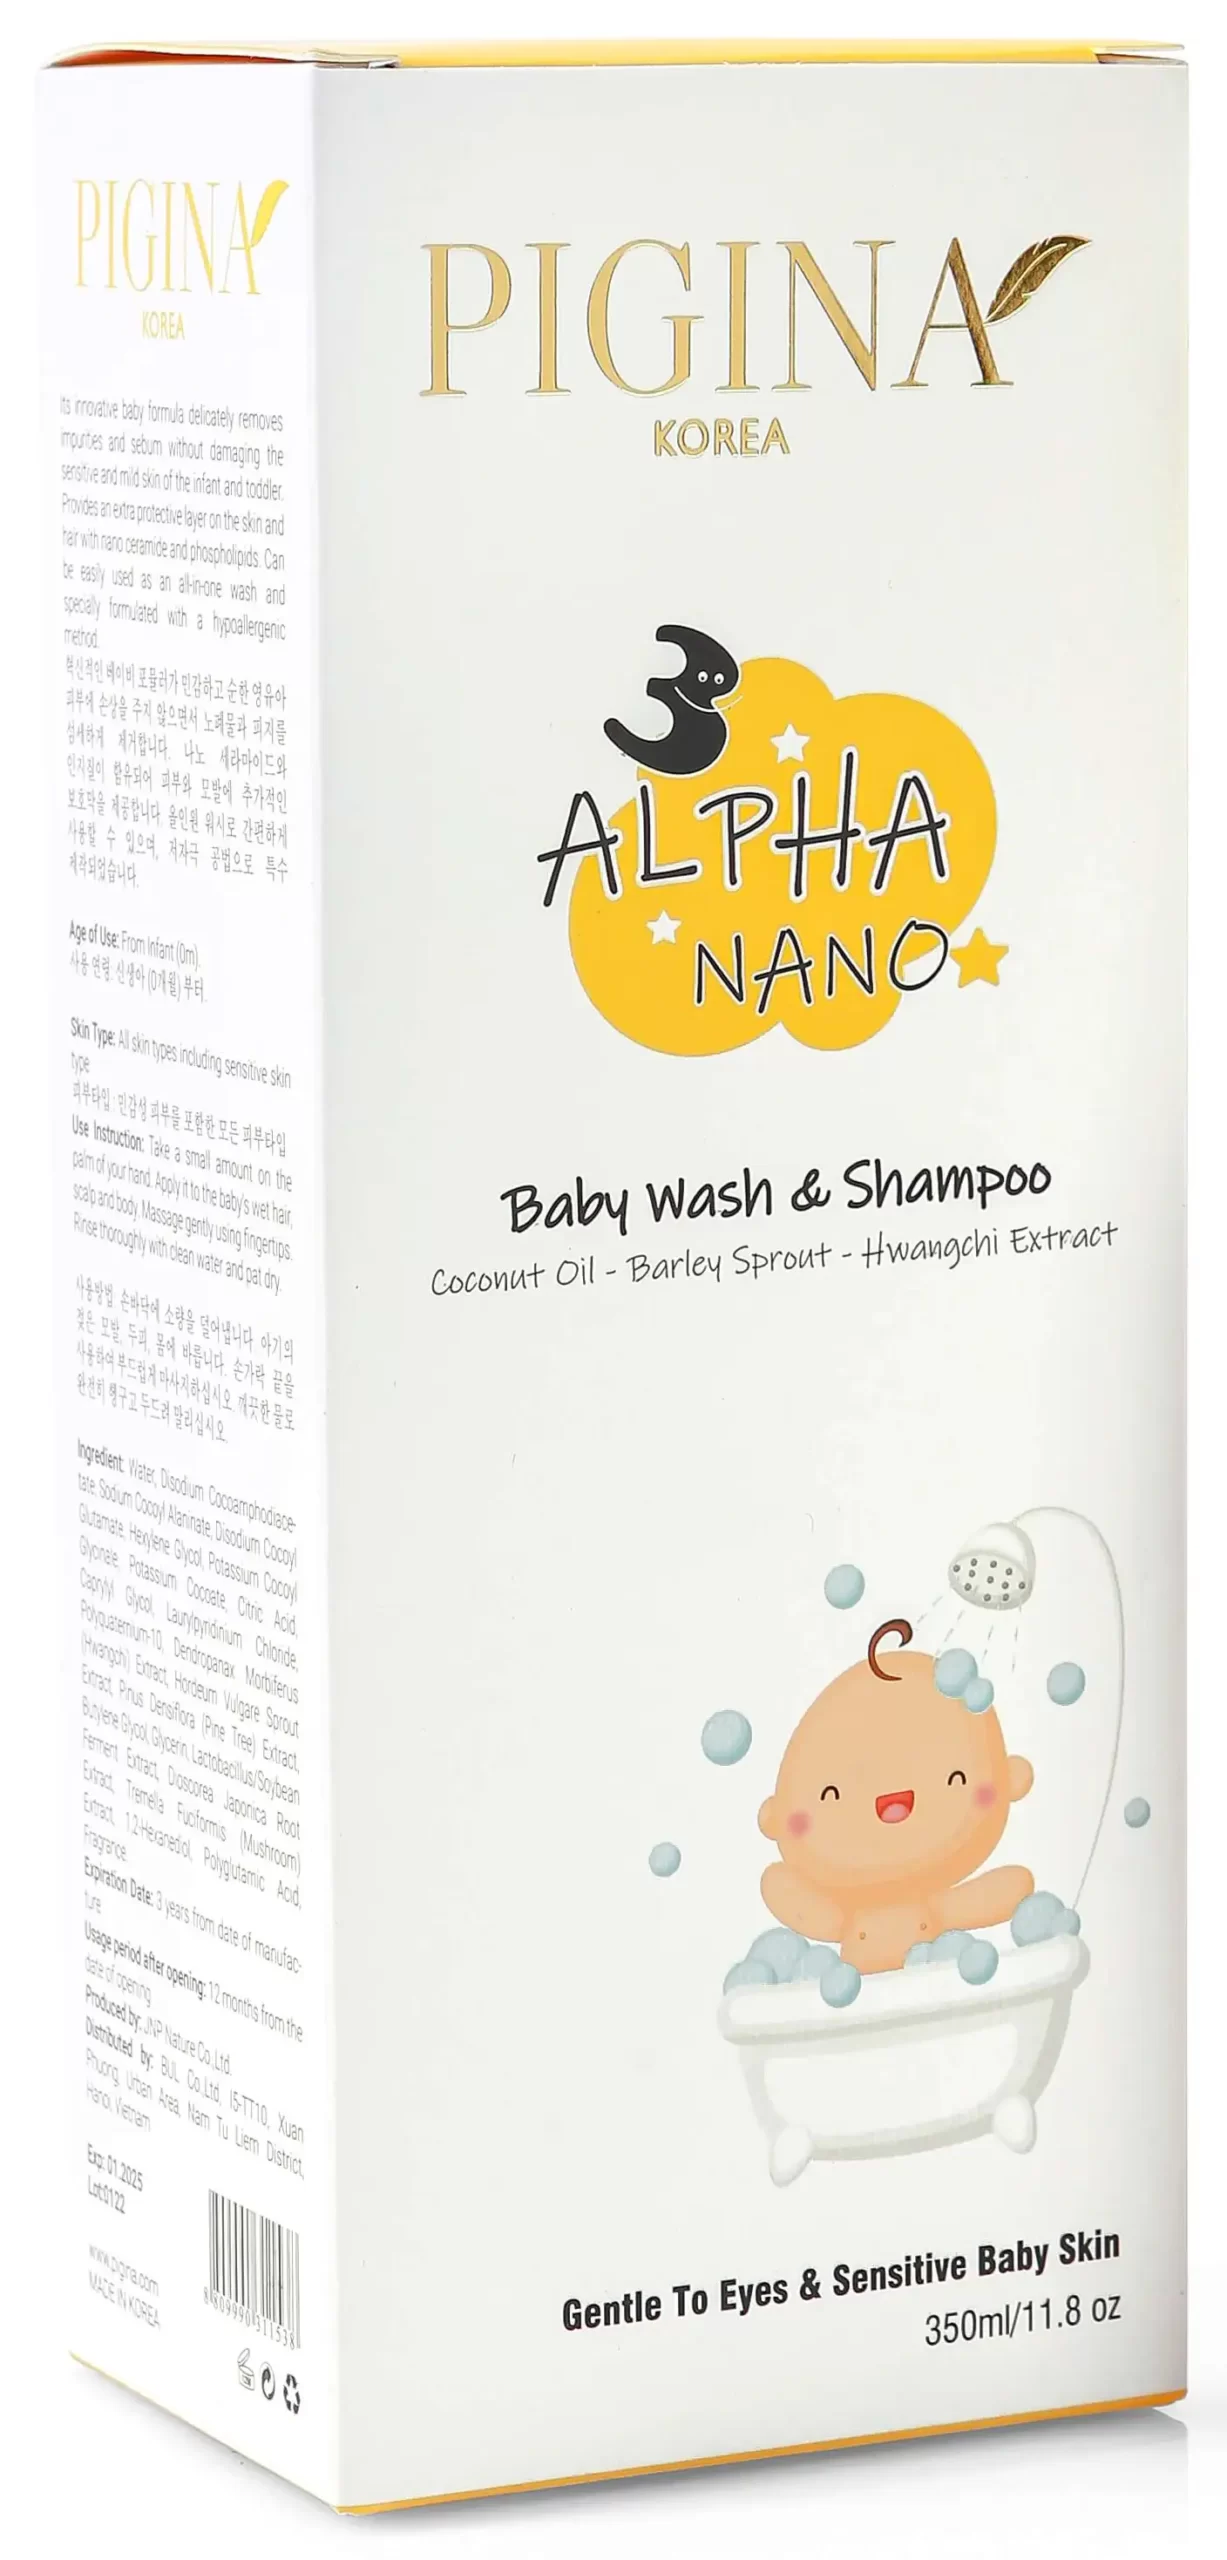 Thành phần Sữa tắm gội cho bé Pigina Baby Wash & Shampoo 350ml chính hãng giá tốt - DroppiiShops